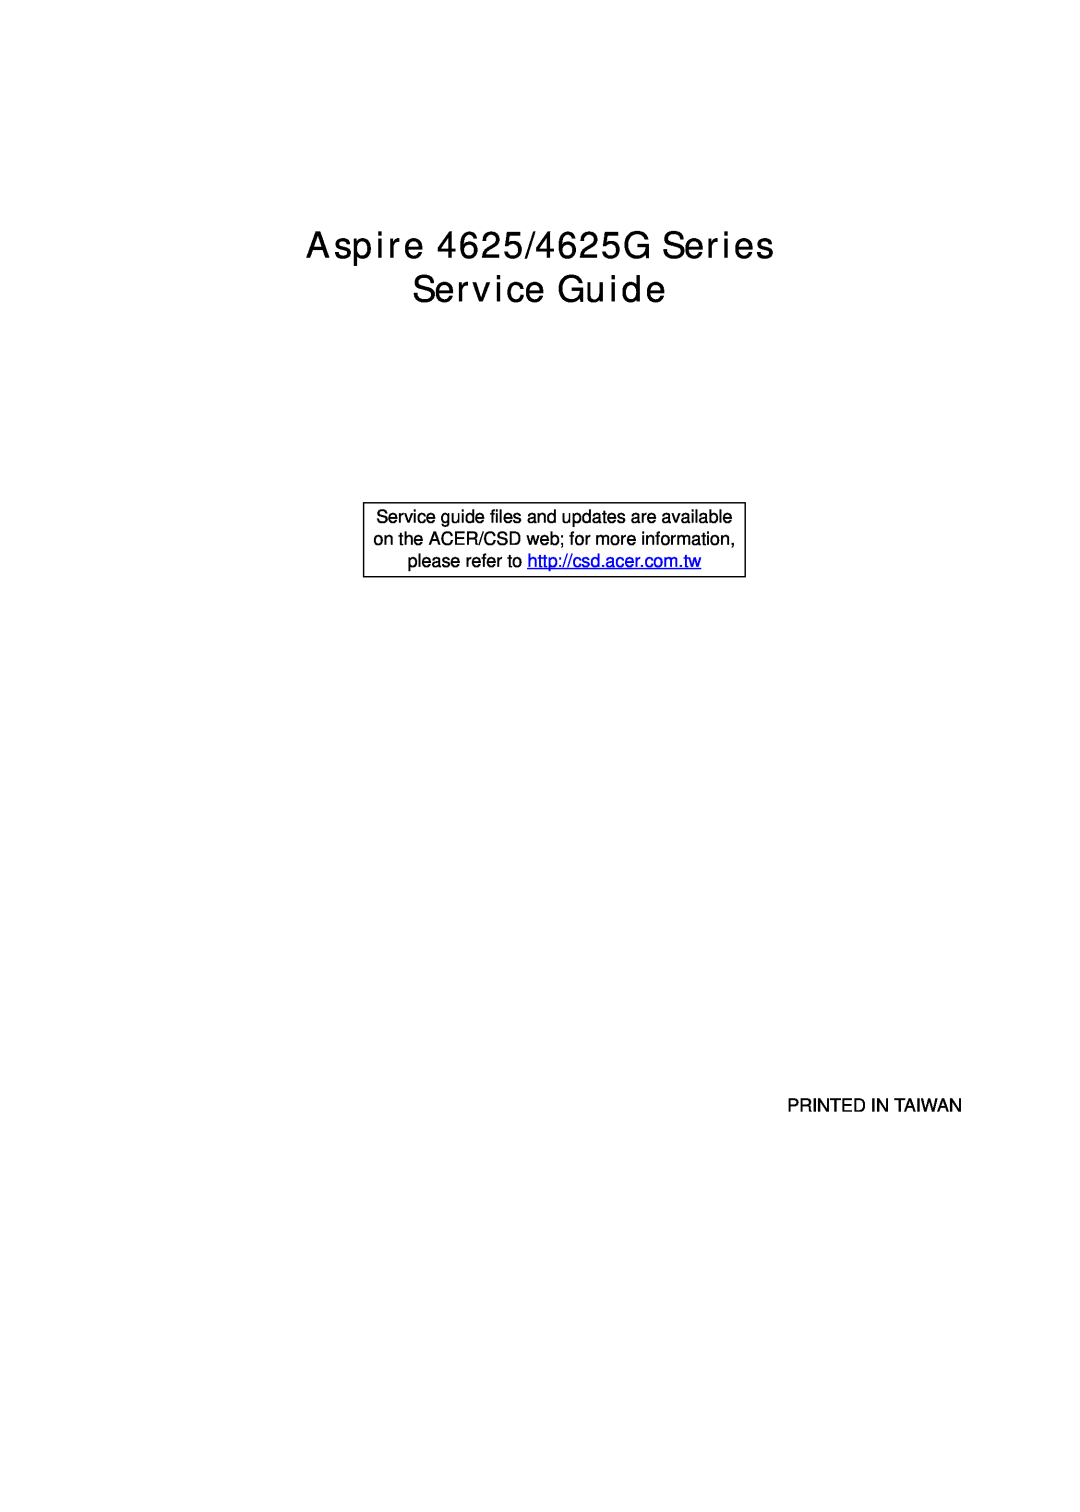 Aspire Digital manual Aspire 4625/4625G Series Service Guide, Printed In Taiwan 